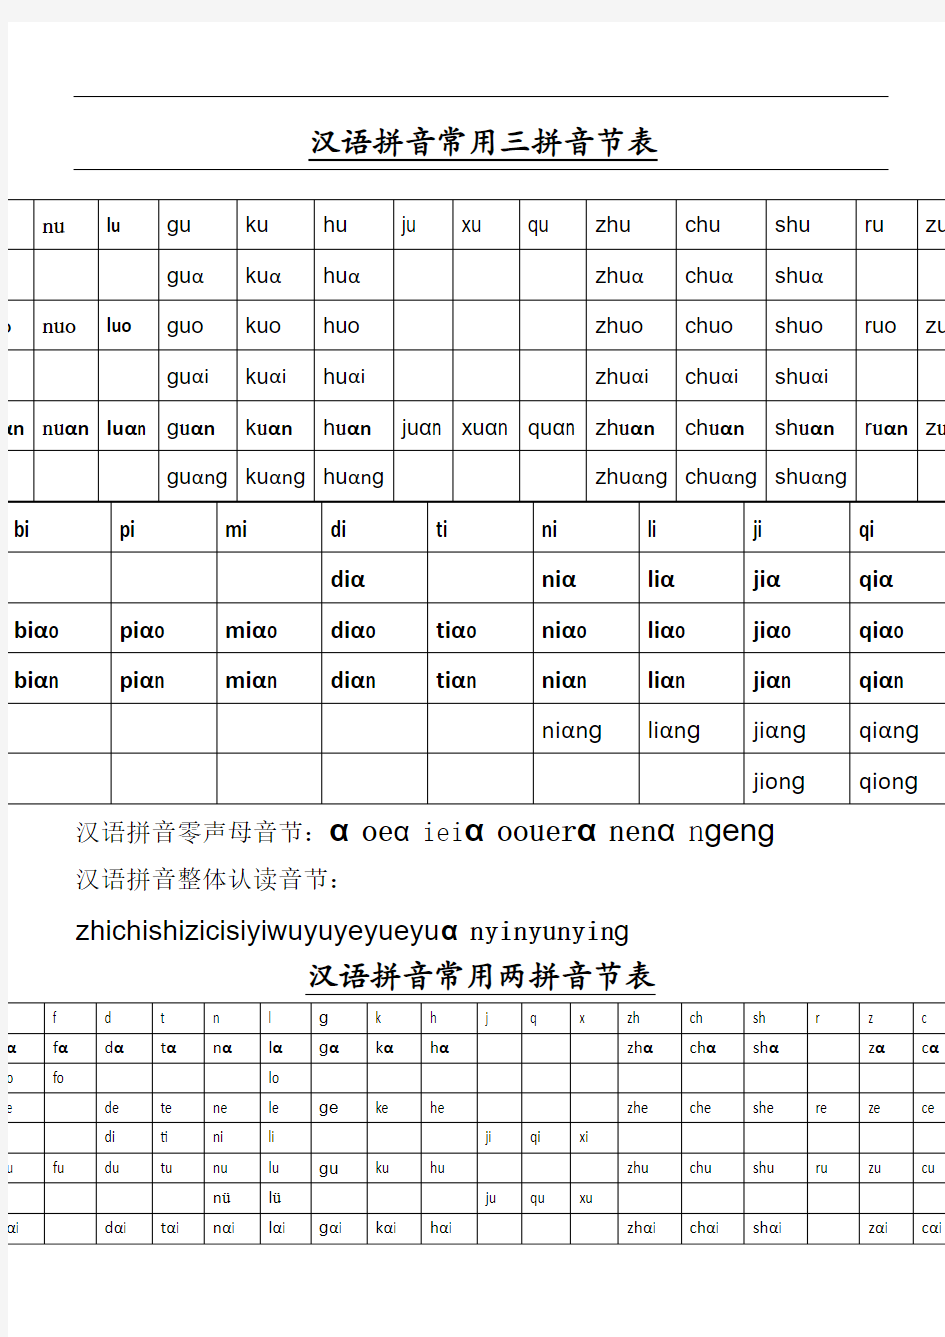 汉 语 拼 音 常 用 三 拼 音 节 和二拼音节表格模板